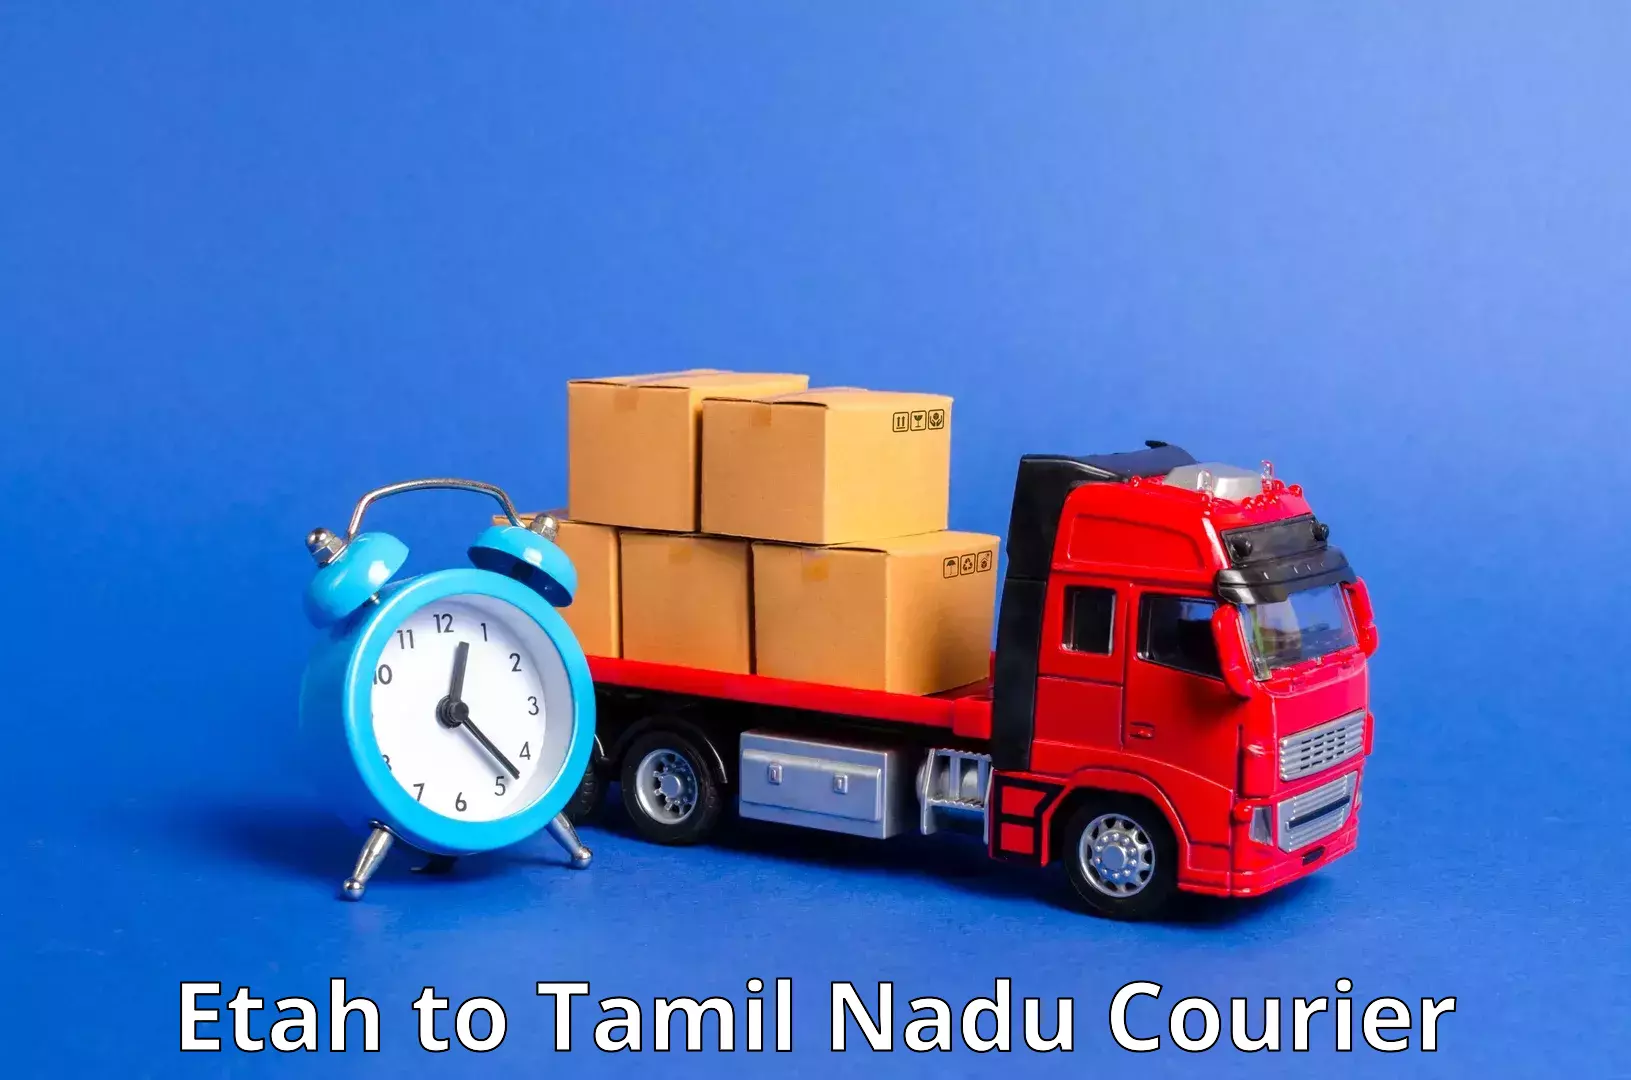 Courier rate comparison Etah to Tamil Nadu